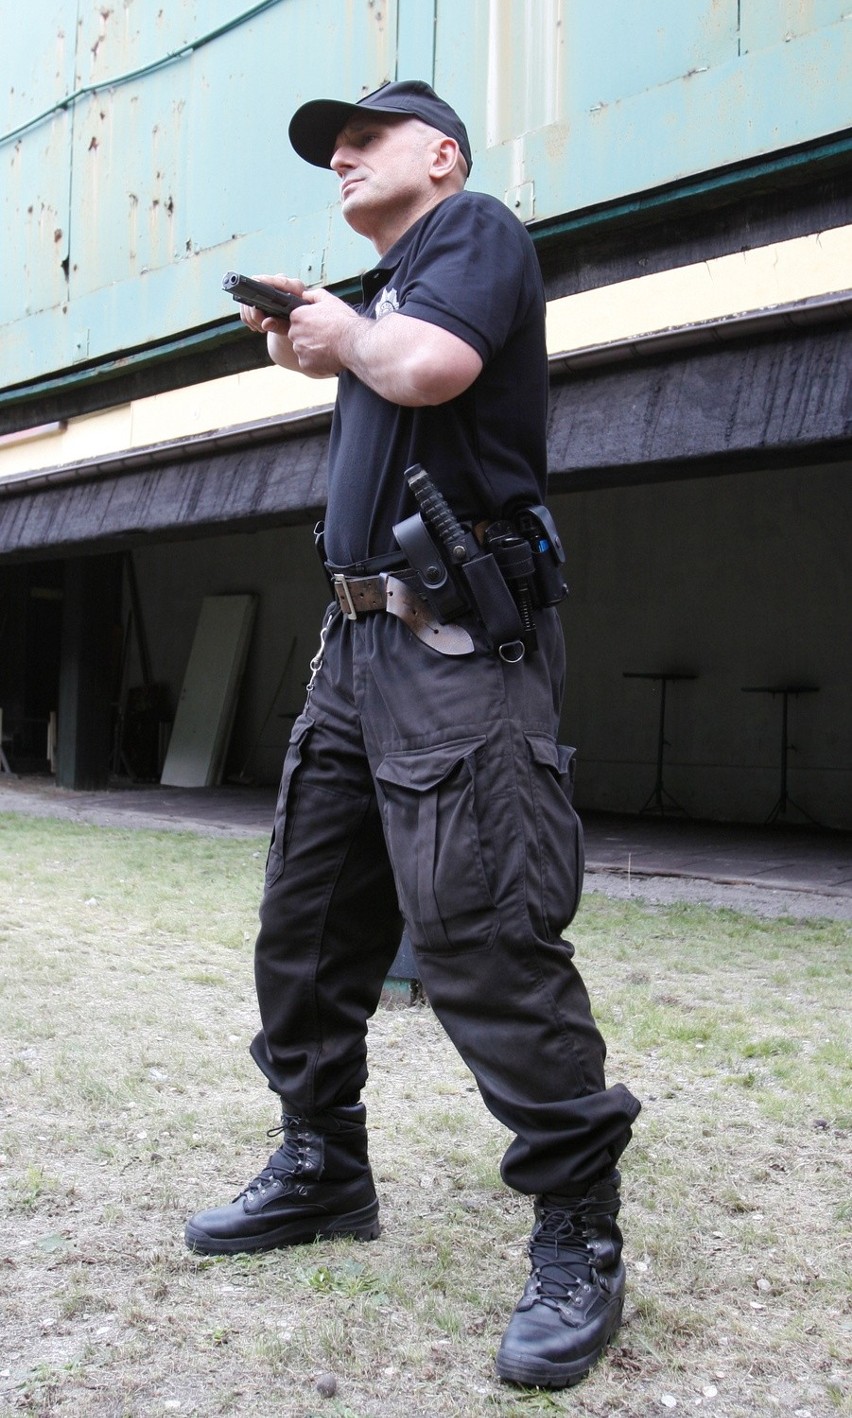 Policjant składający się do strzału KLATKA PO KLATCE